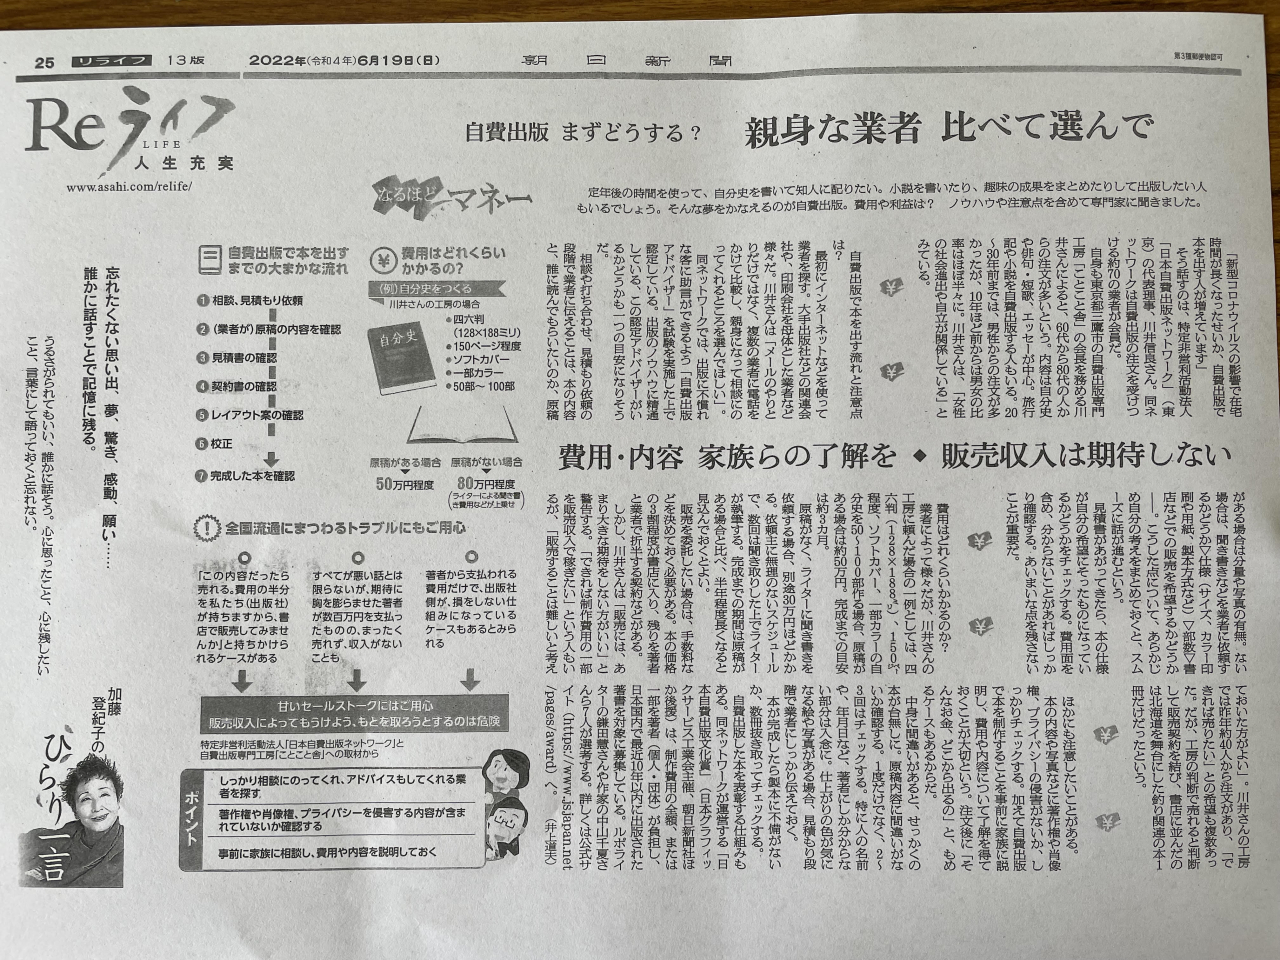 弊社会員である「日本自費出版ネットワーク」の記事が朝日新聞ReライフPROJECTに掲載されました。